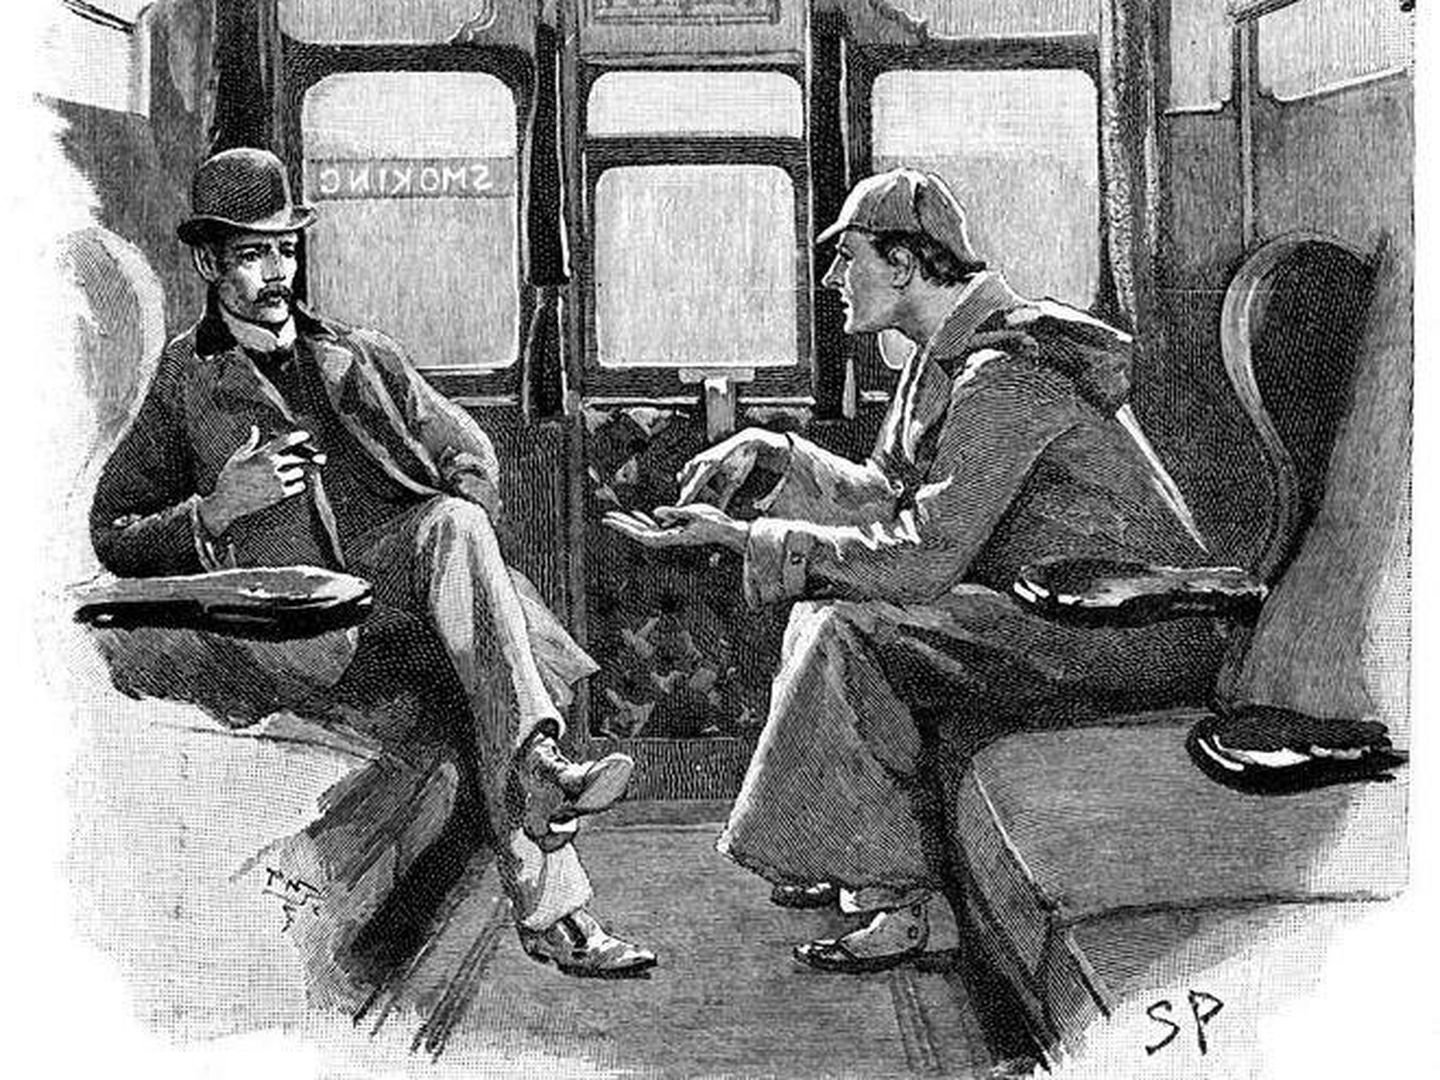 Ilustración del británico Sidney Paget de Sherlock Holmes y su ayudante Watson.